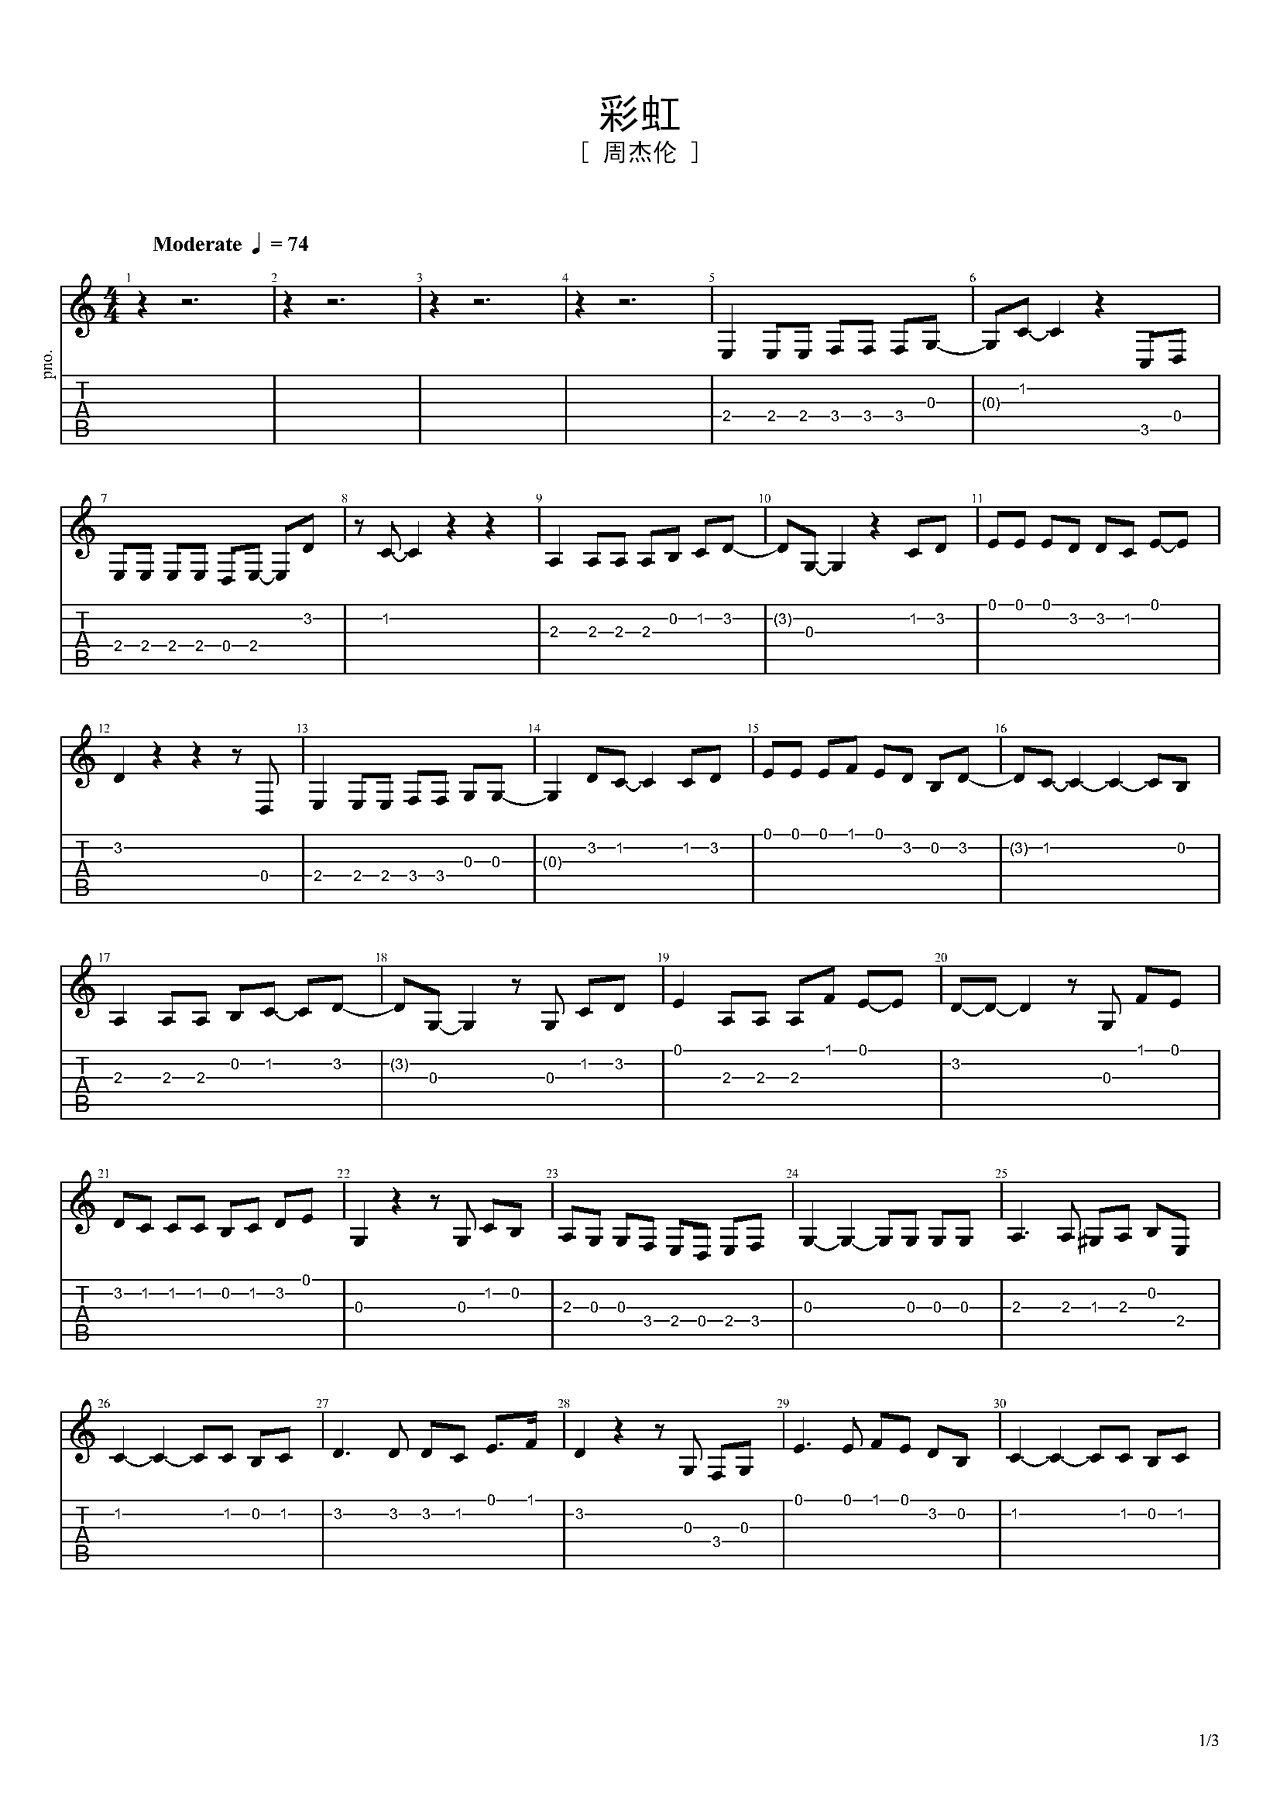 简单版《彩虹》钢琴谱 - 周杰伦0基础钢琴简谱 - 高清谱子图片 - 钢琴简谱